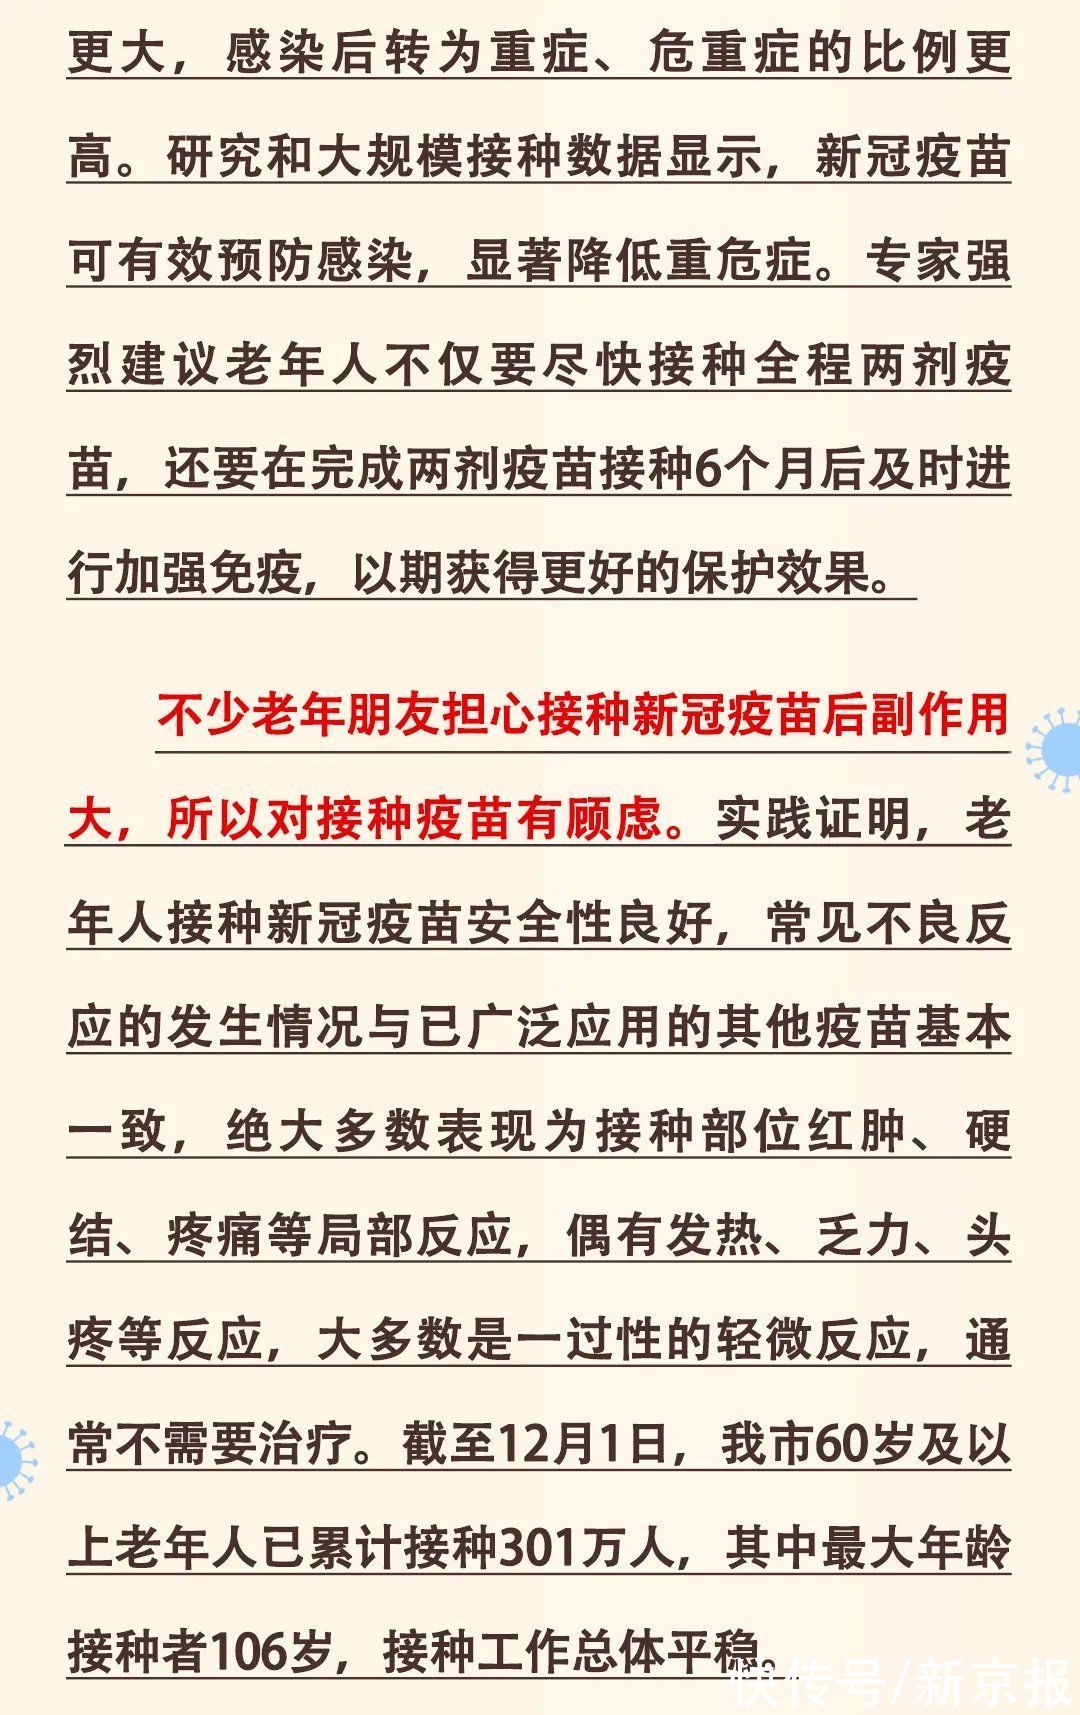 北京疾控|北京市疾控中心致老年朋友及家属的一封信